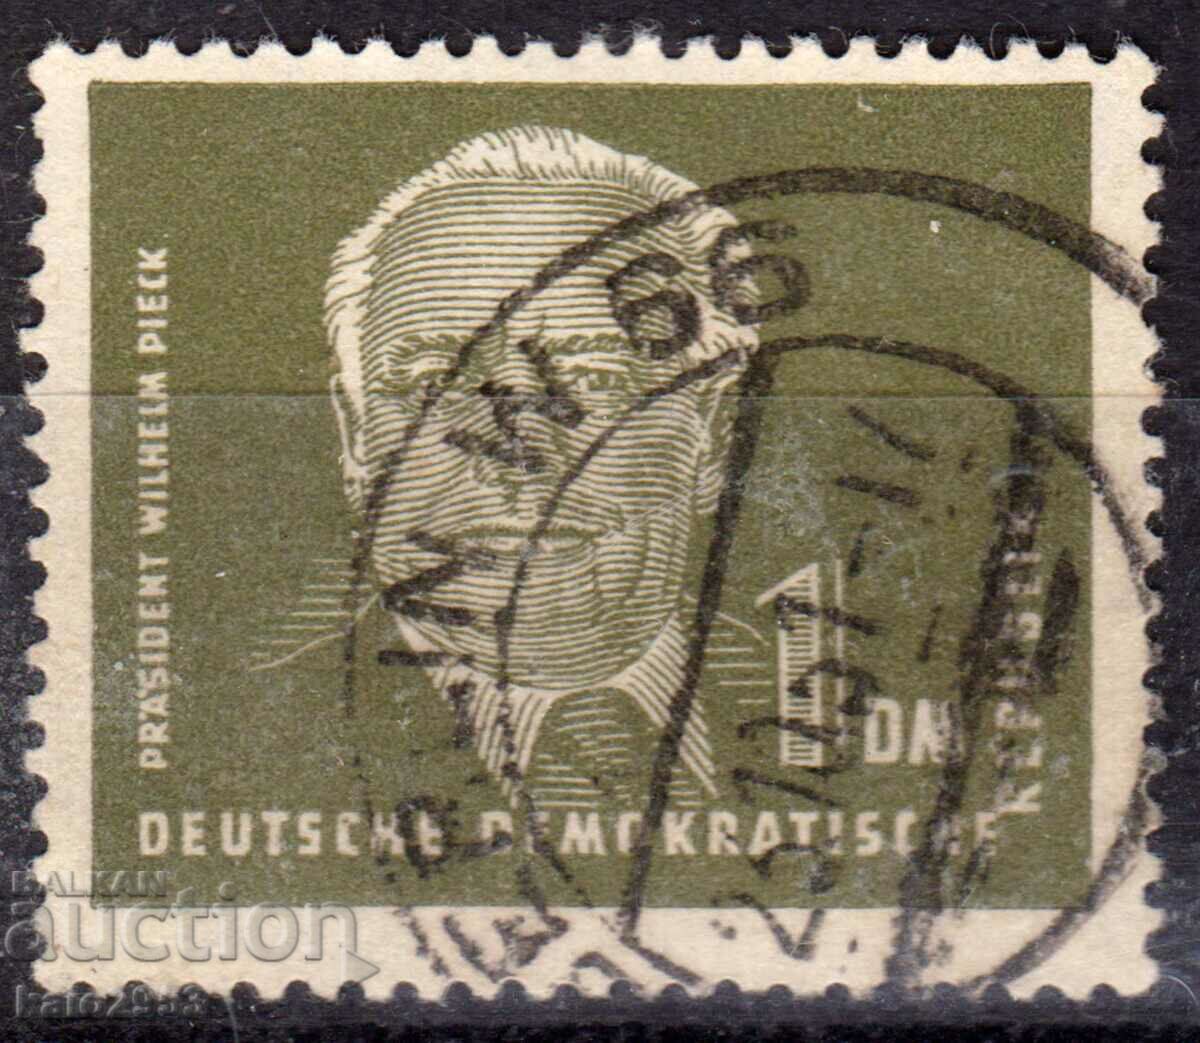 Germany/GDR-1951-Regular-pres. V. Pick, γραμματόσημο